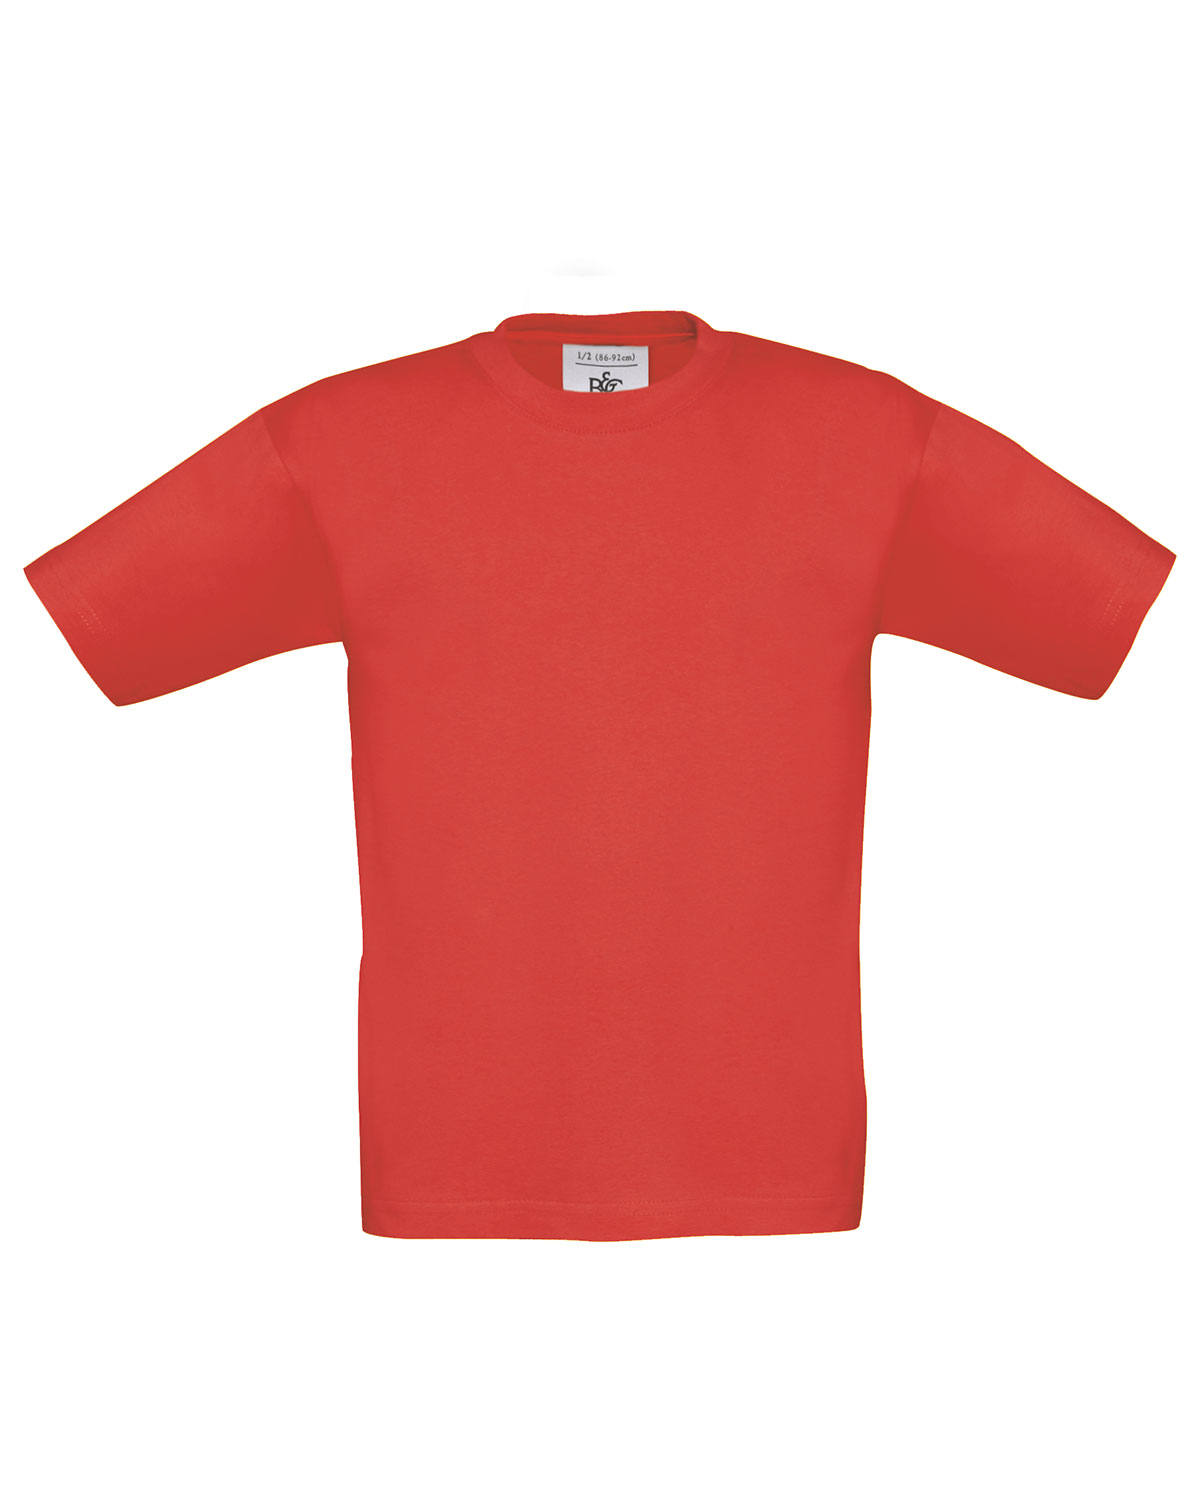 T-Shirt Exact 190 /kids Red 152/164